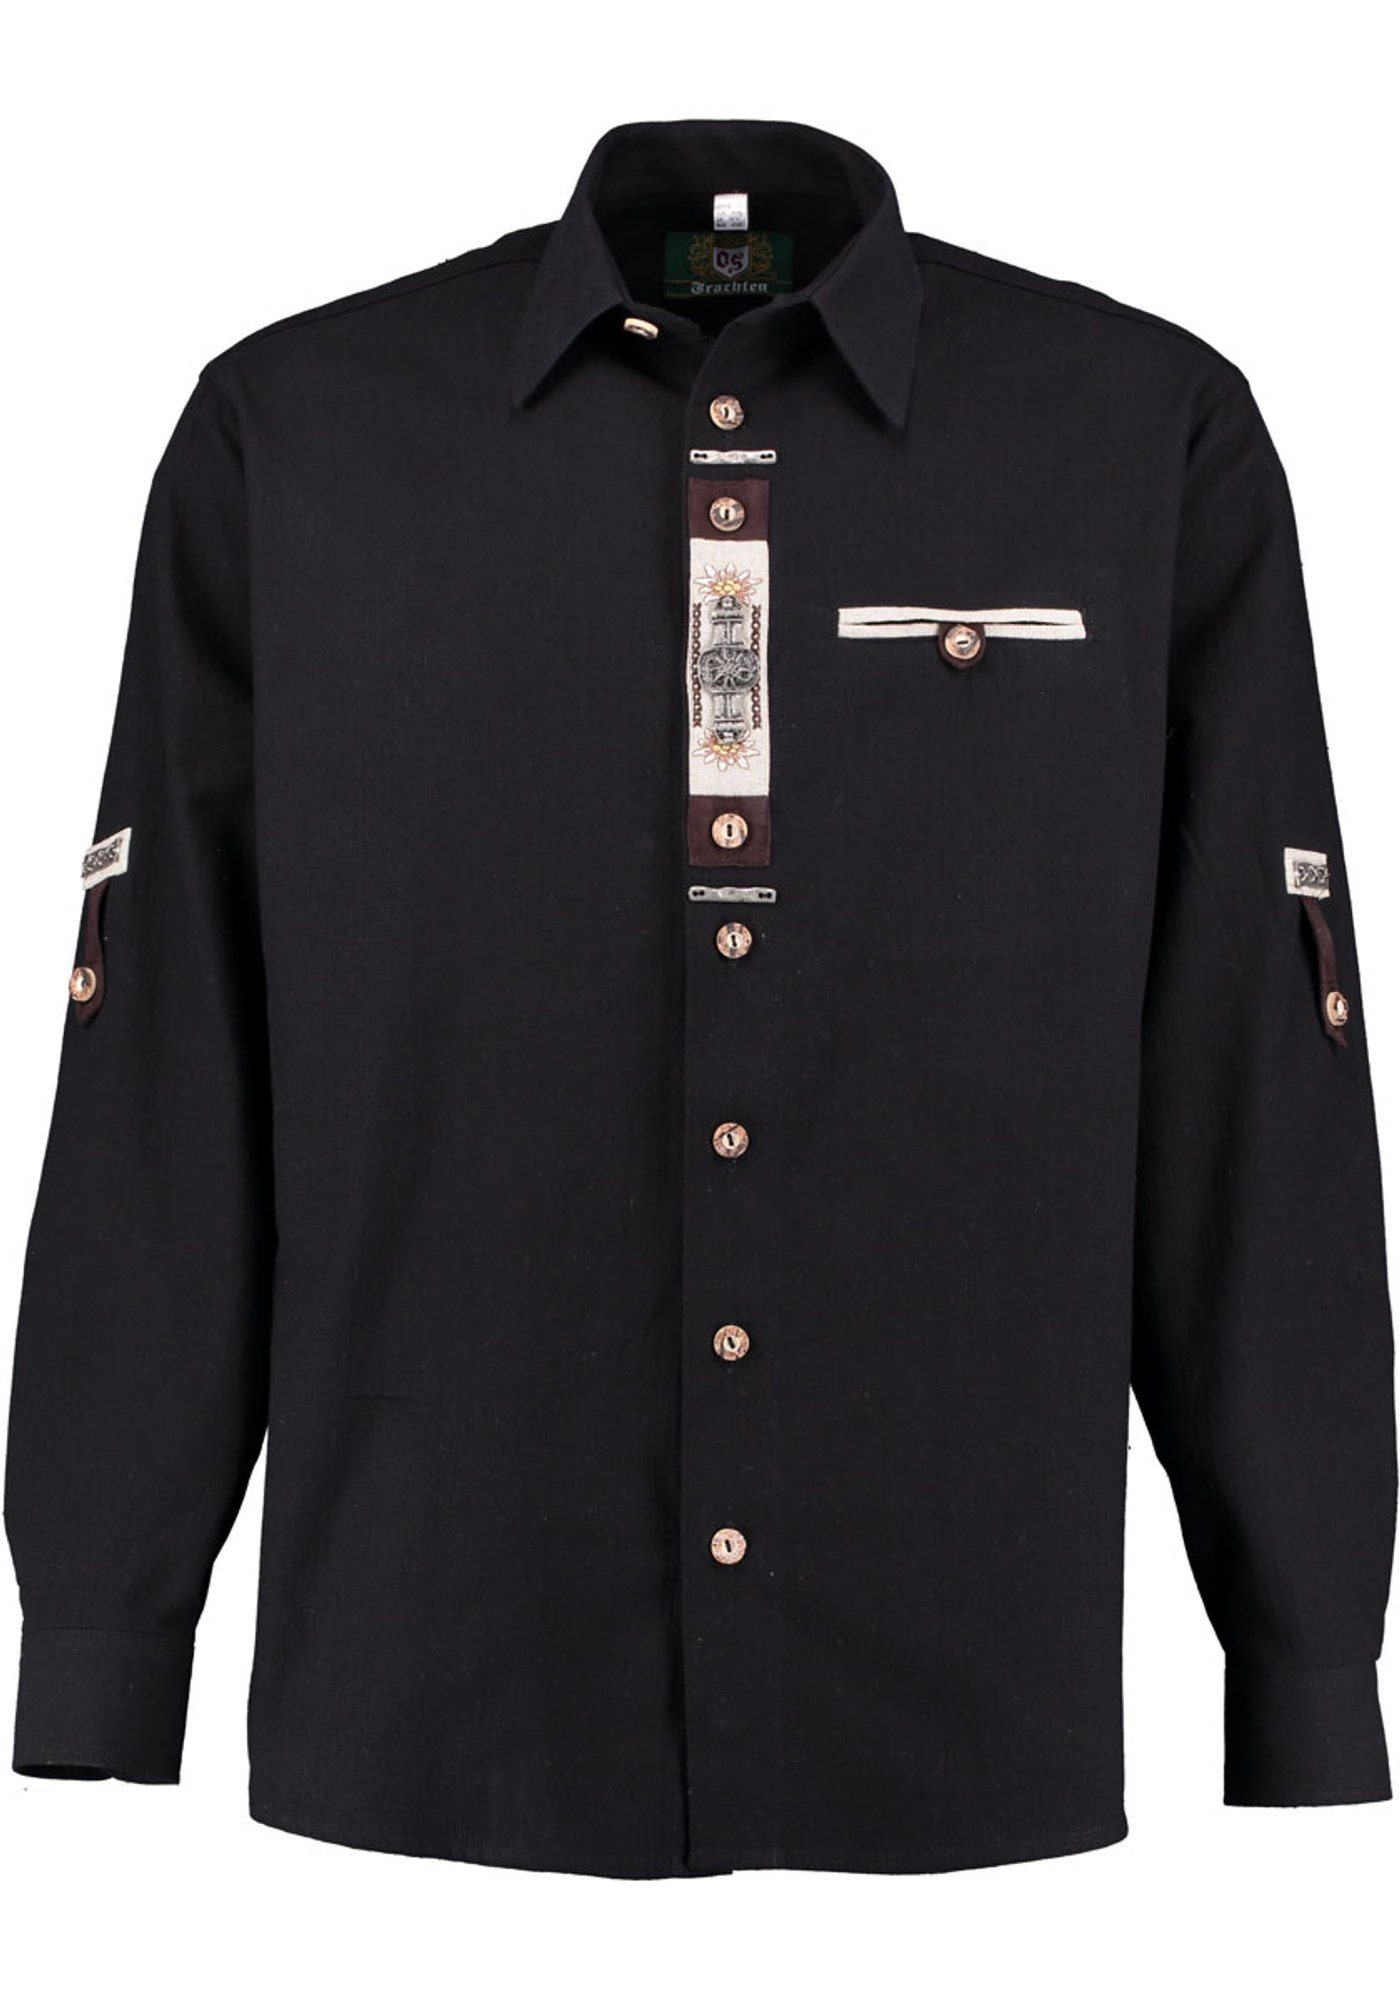 OS-Trachten Trachtenhemd Glexor Langarmhemd mit Edelweiß-Zierteile auf der Knopfleiste schwarz